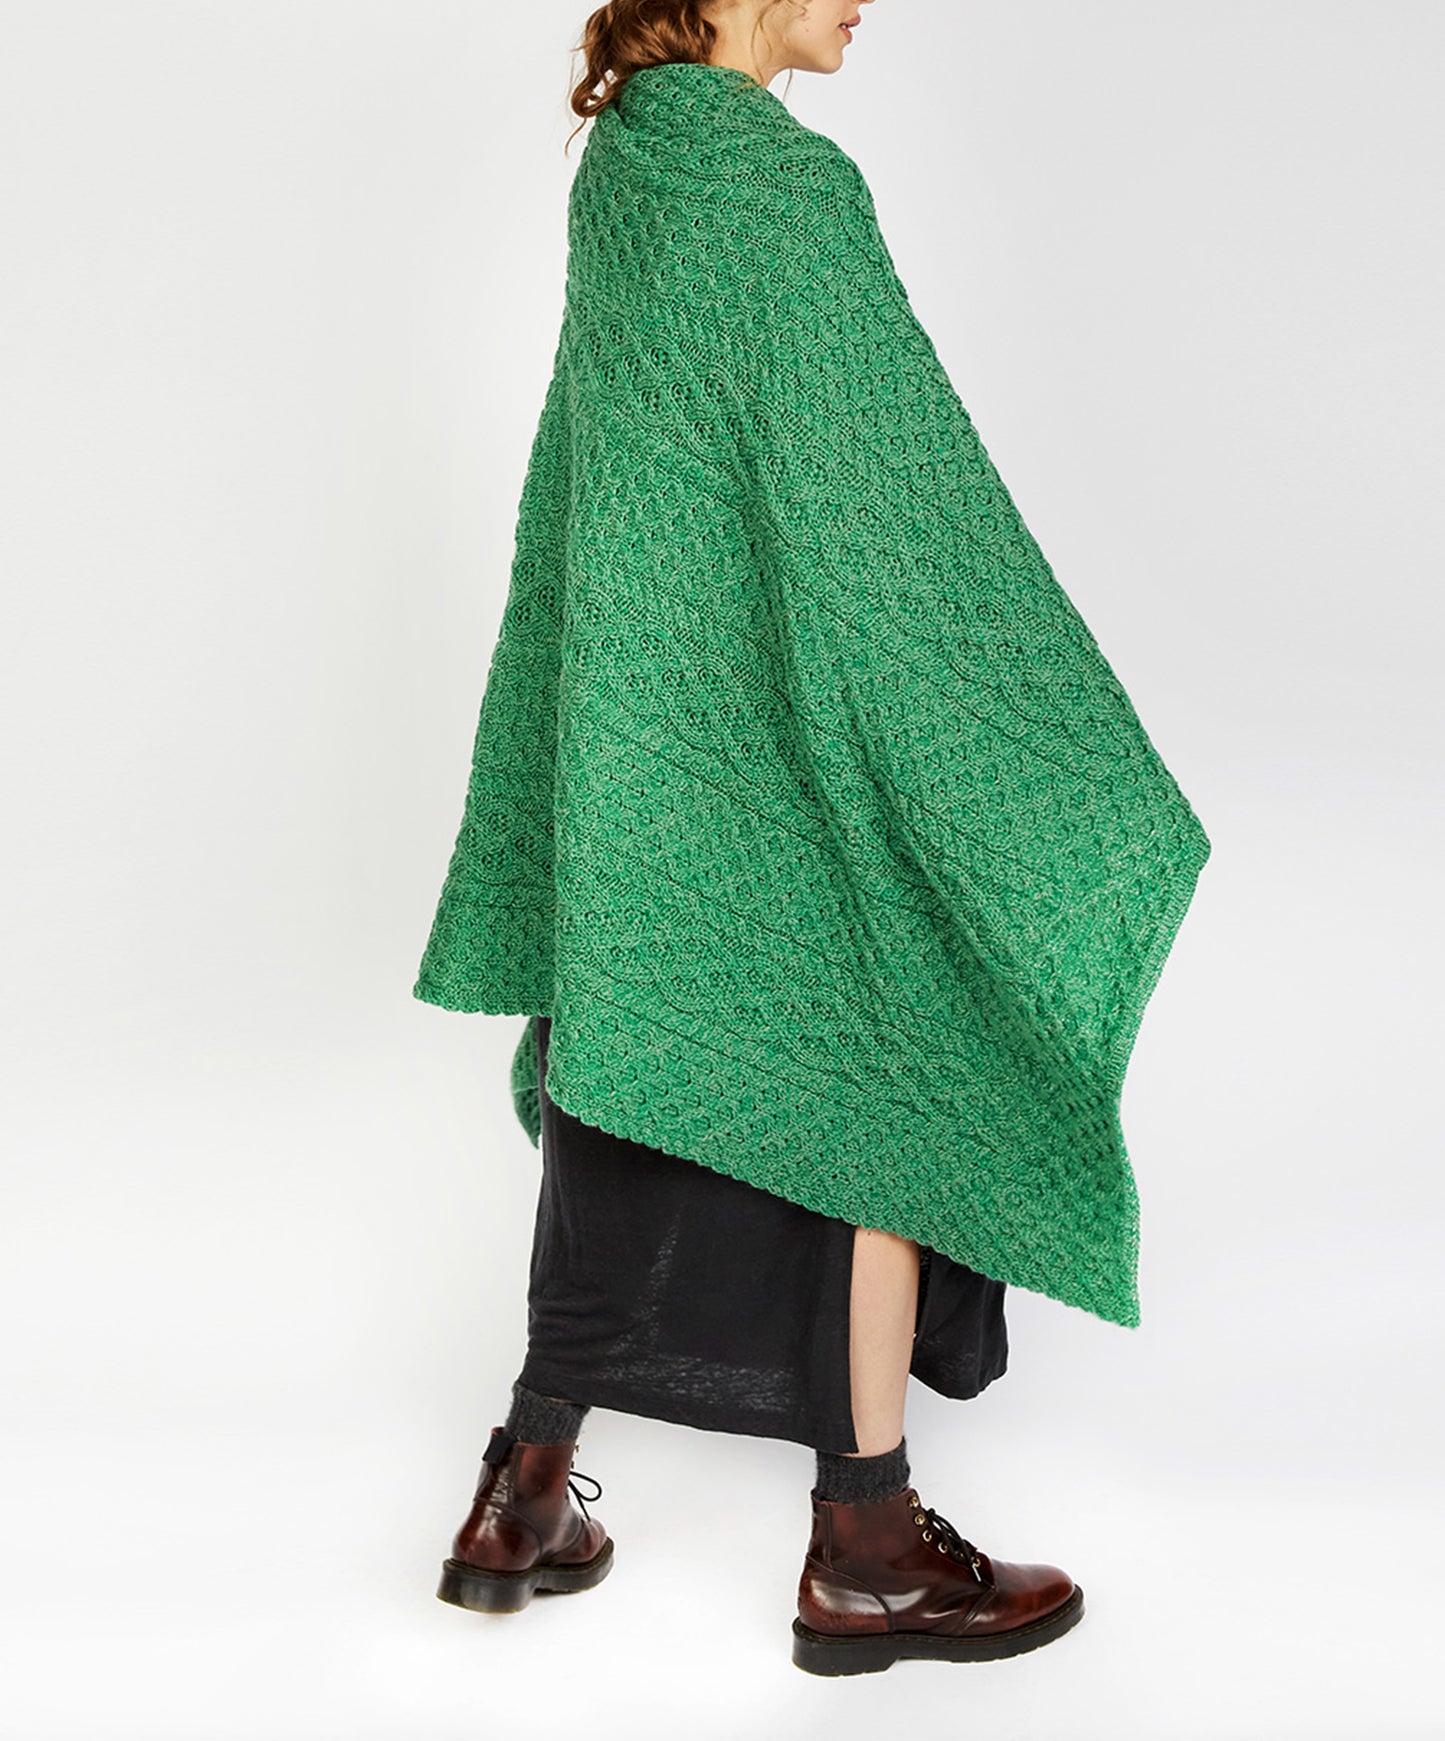 IrelandsEye Knitwear Aran Throw Green Marl